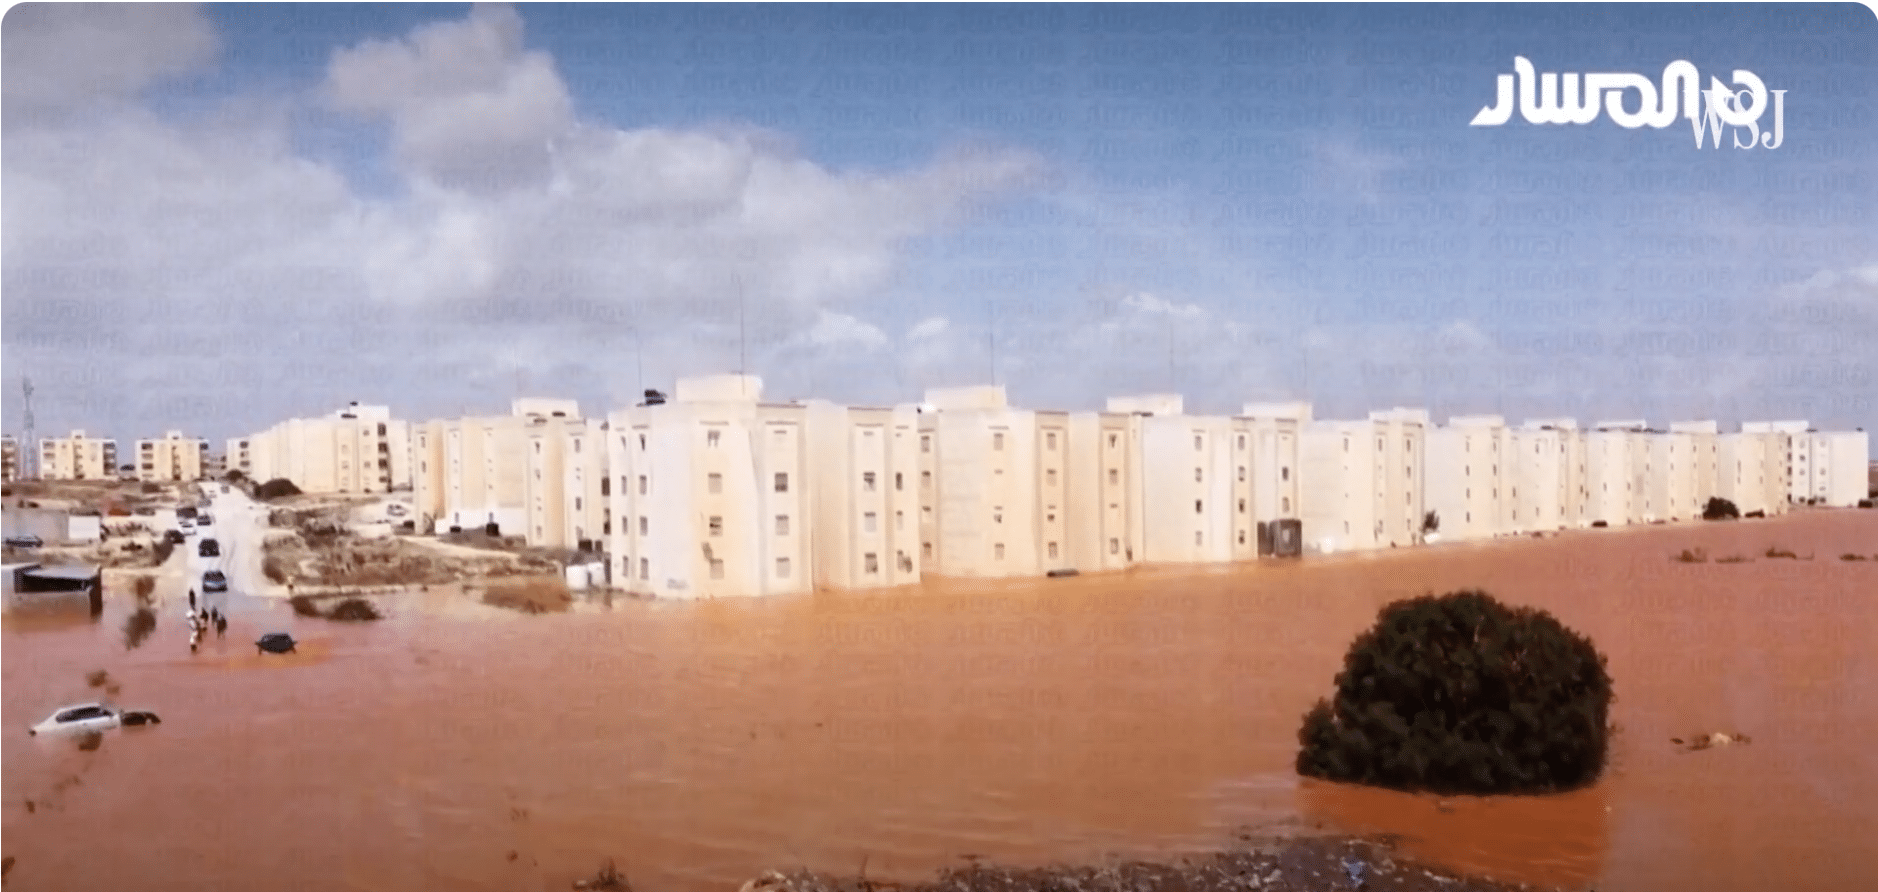 Flooding in eastern Libya leaves 2,000 people feared dead